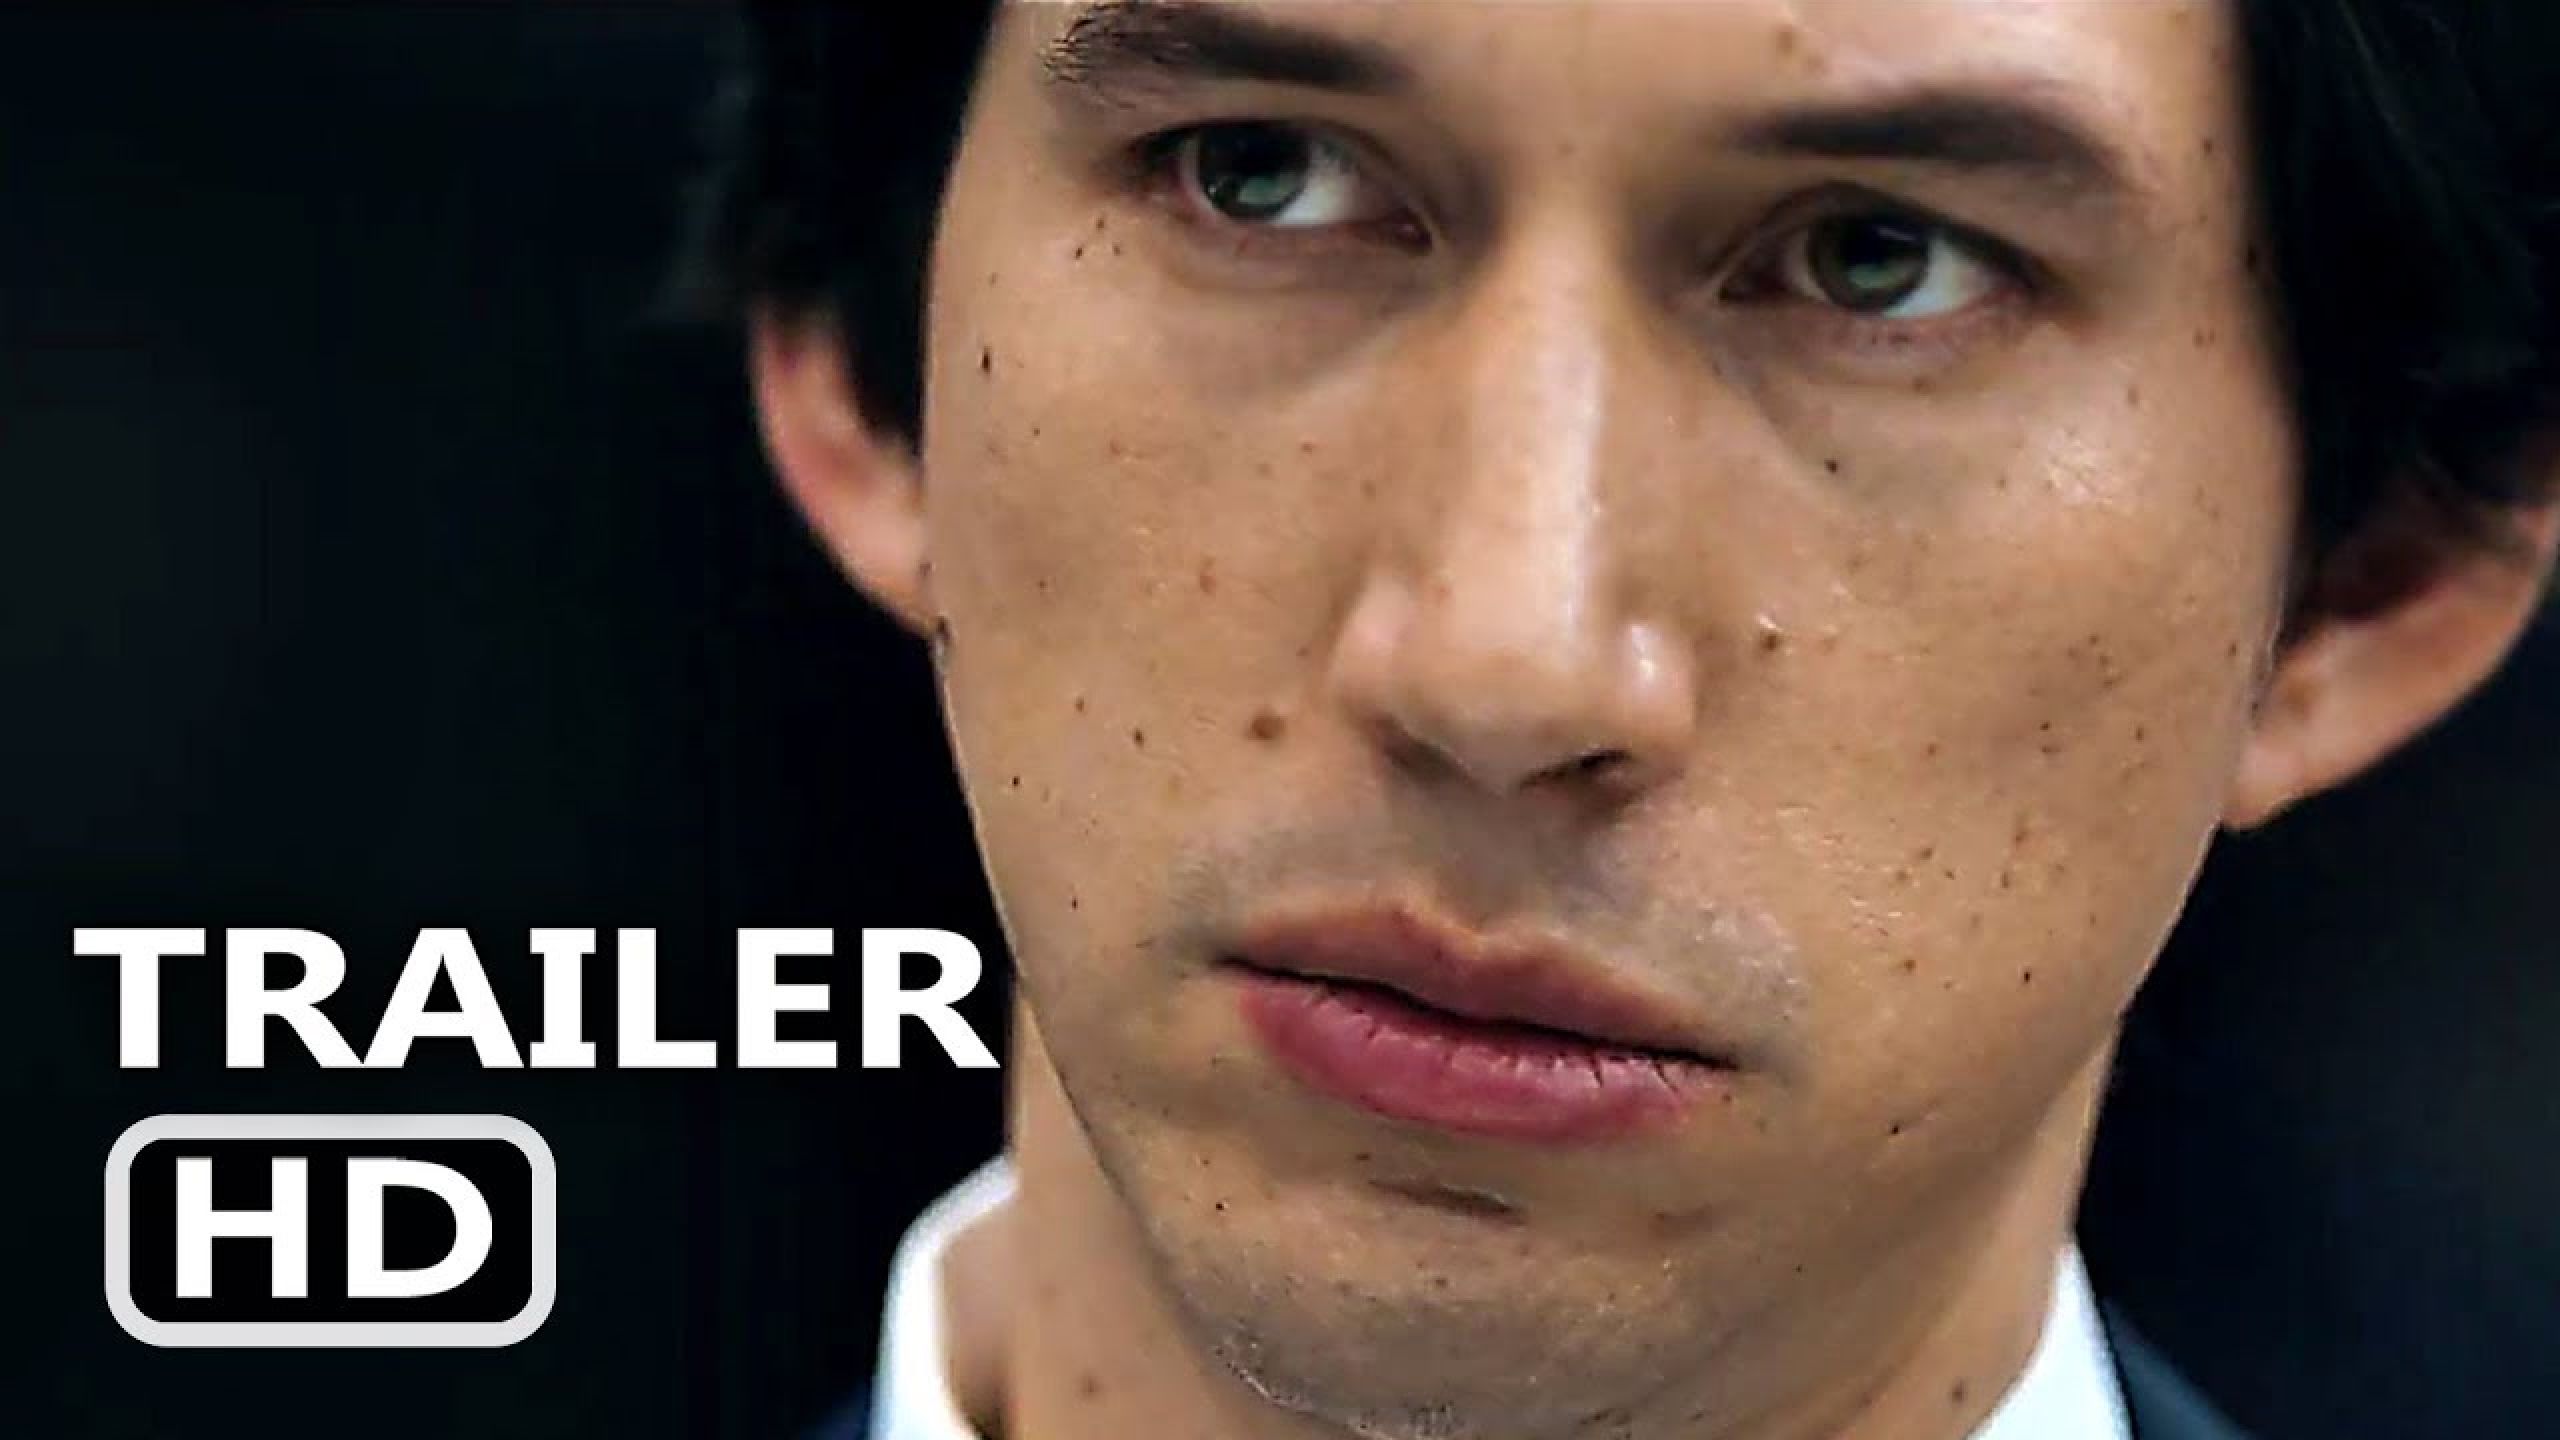 THE REPORT Trailer (2019) Adam Driver, Amazon Prime Drama Movie